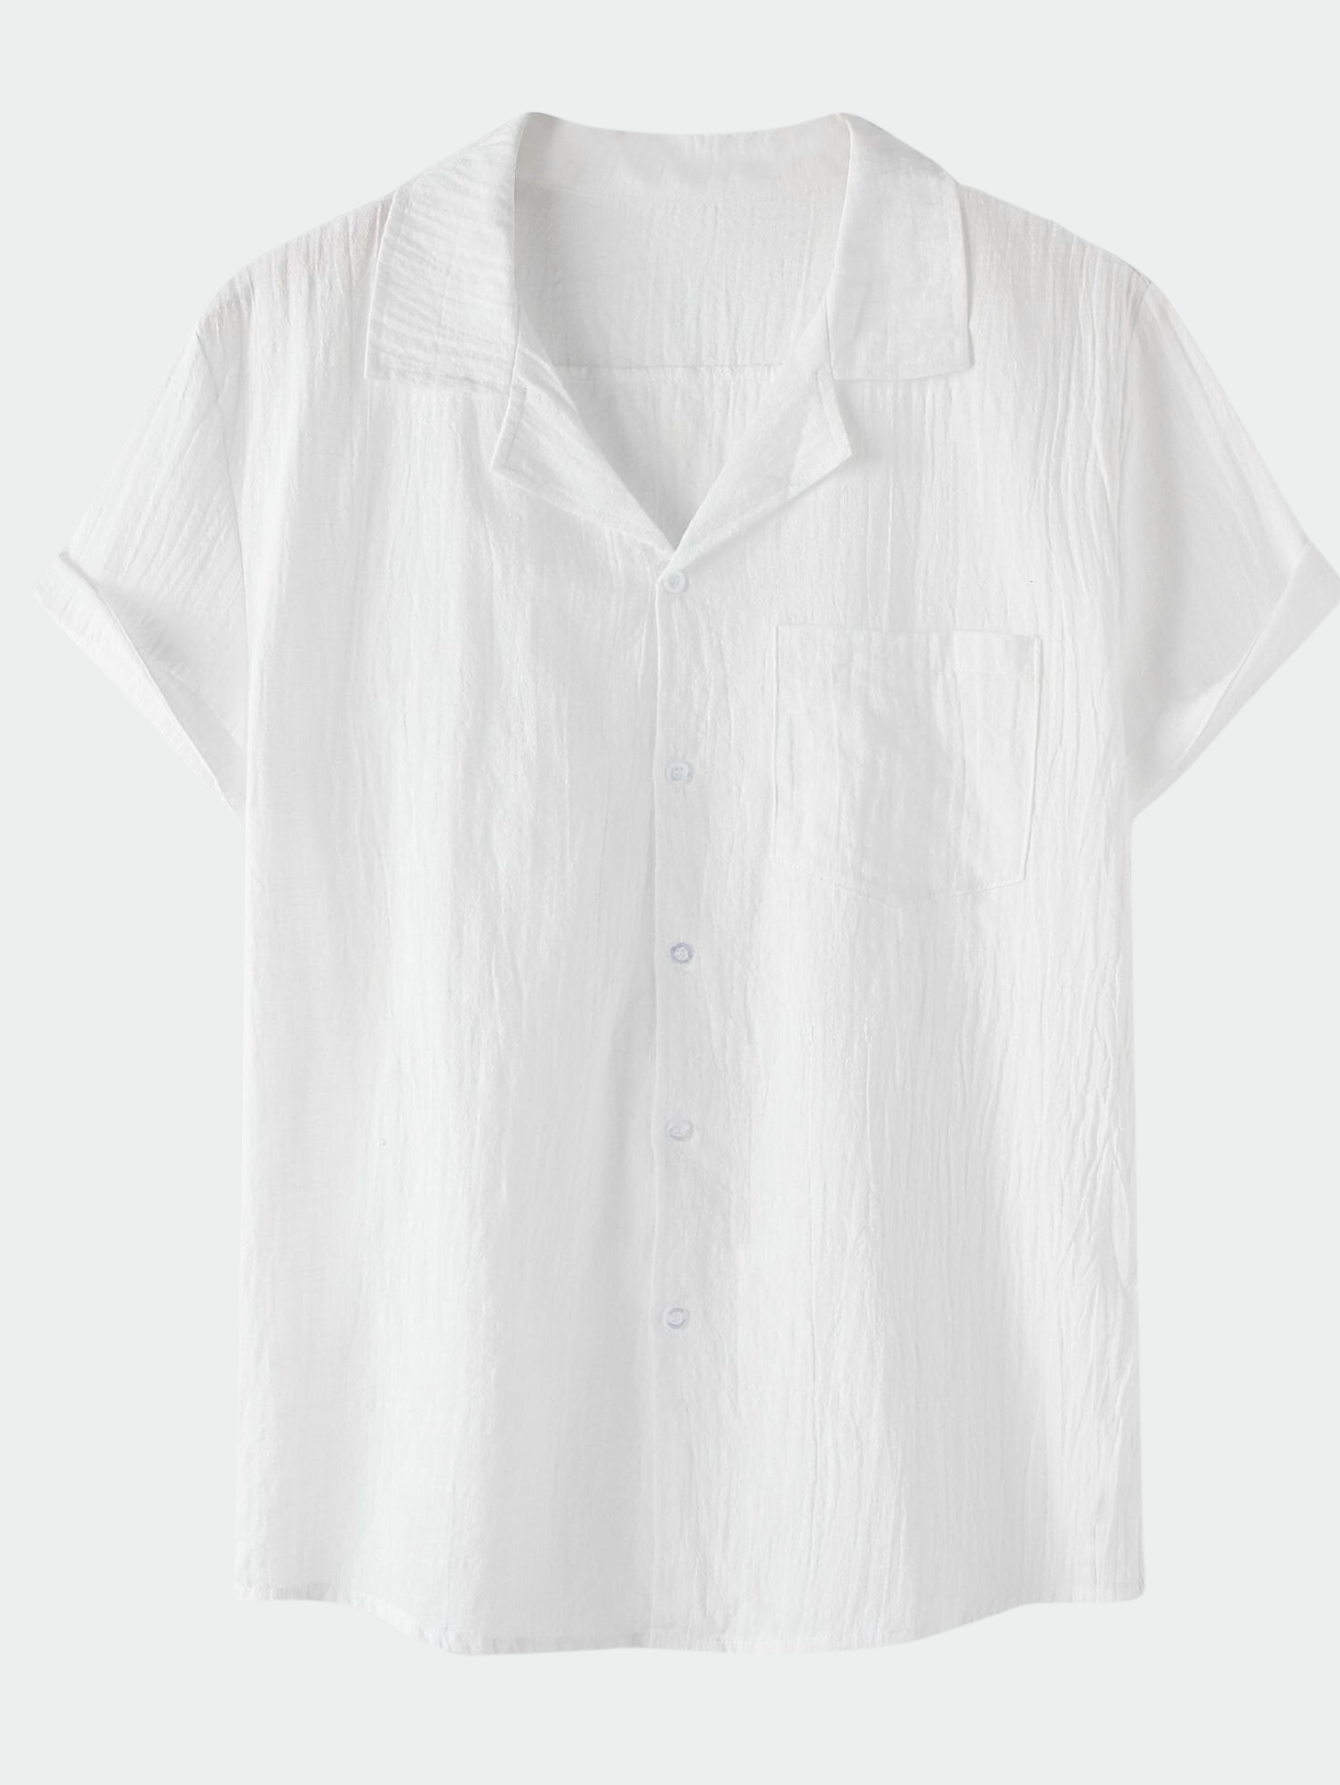 Summer Cotton Linen Short Sleeve Shirt